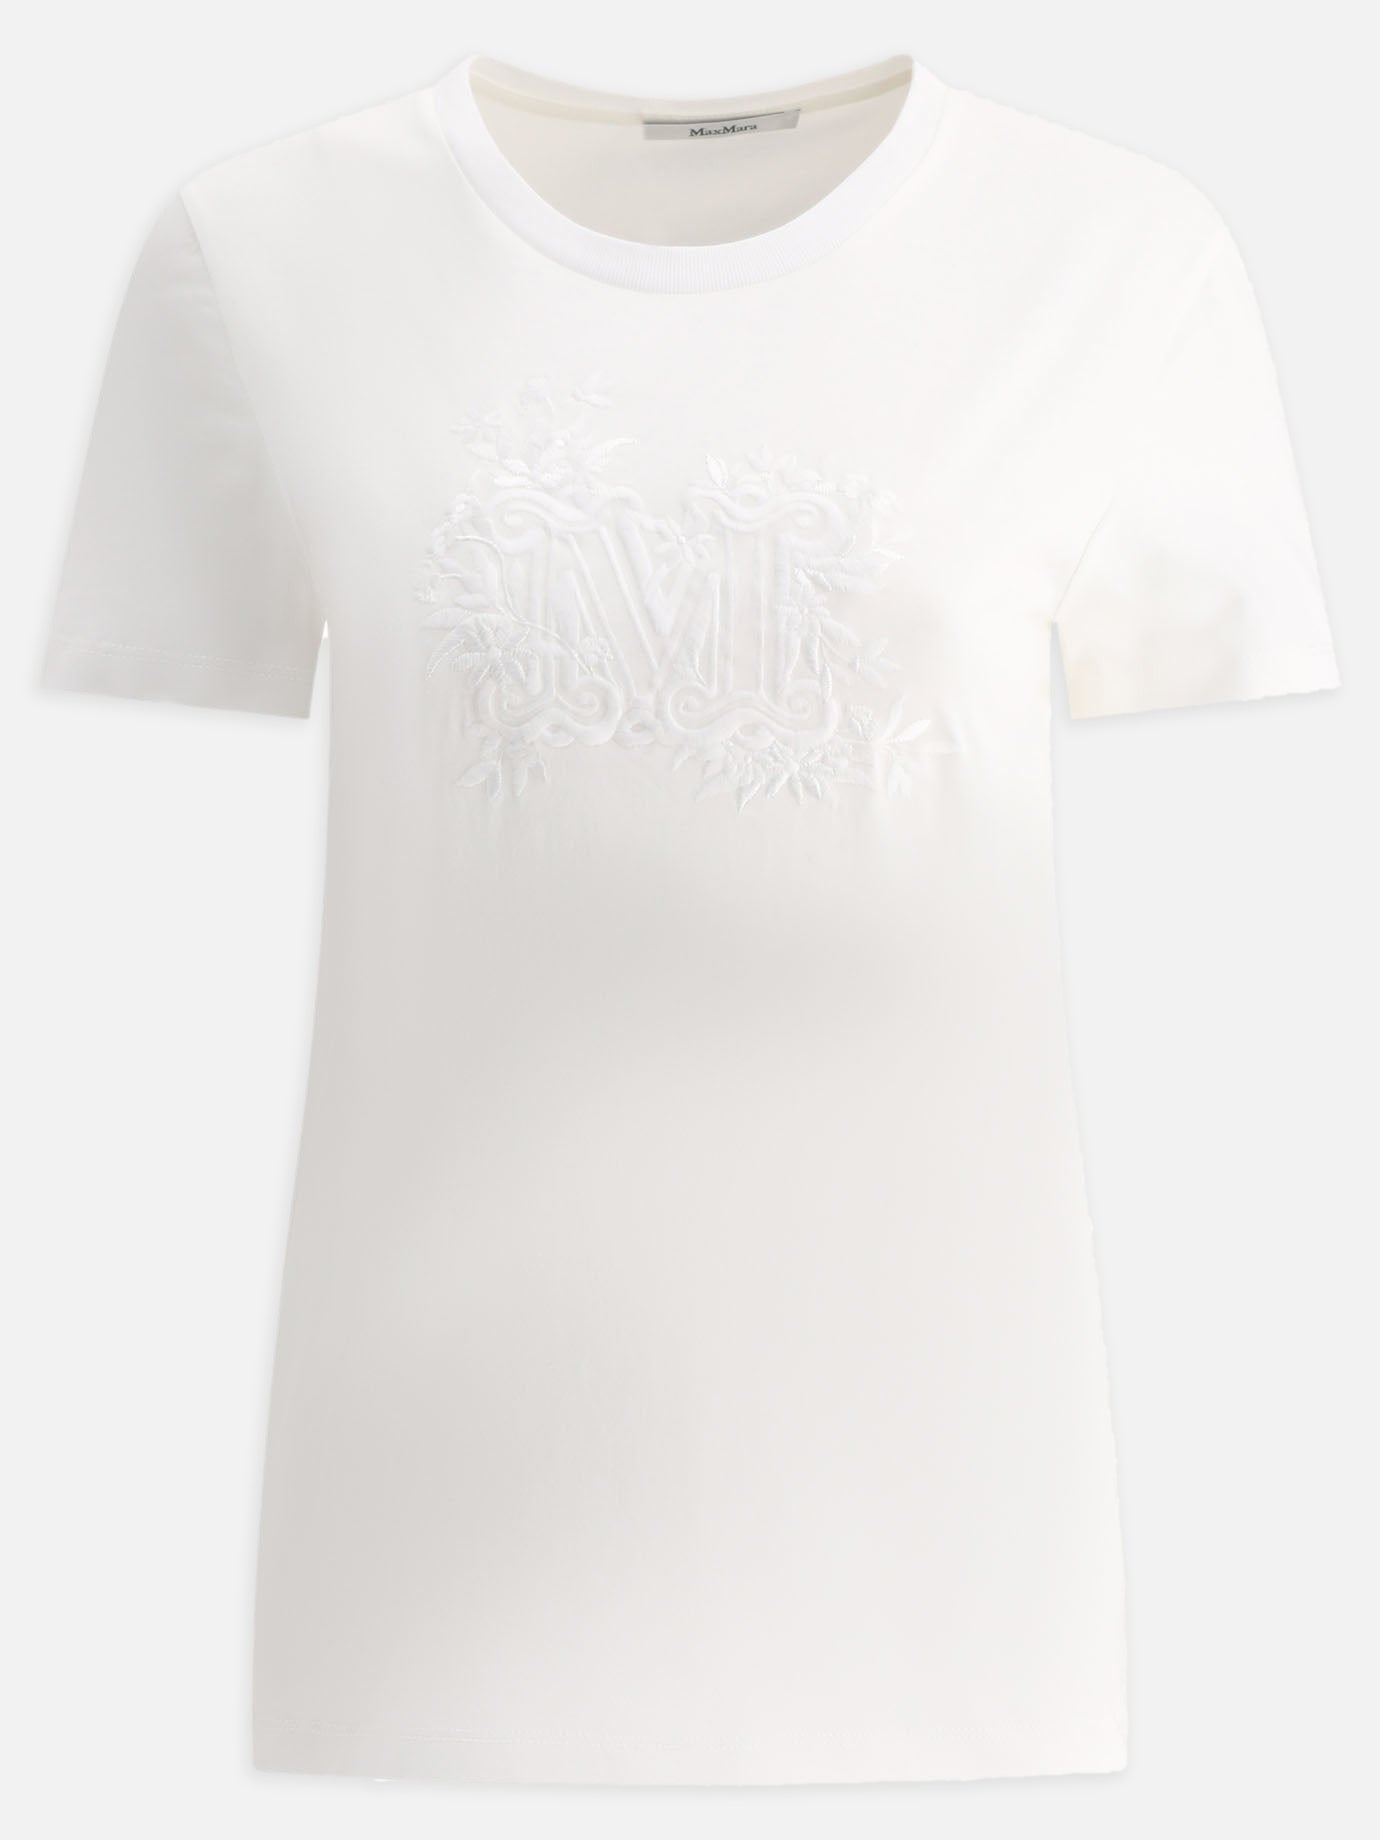 "Sacha" embroidered t-shirt